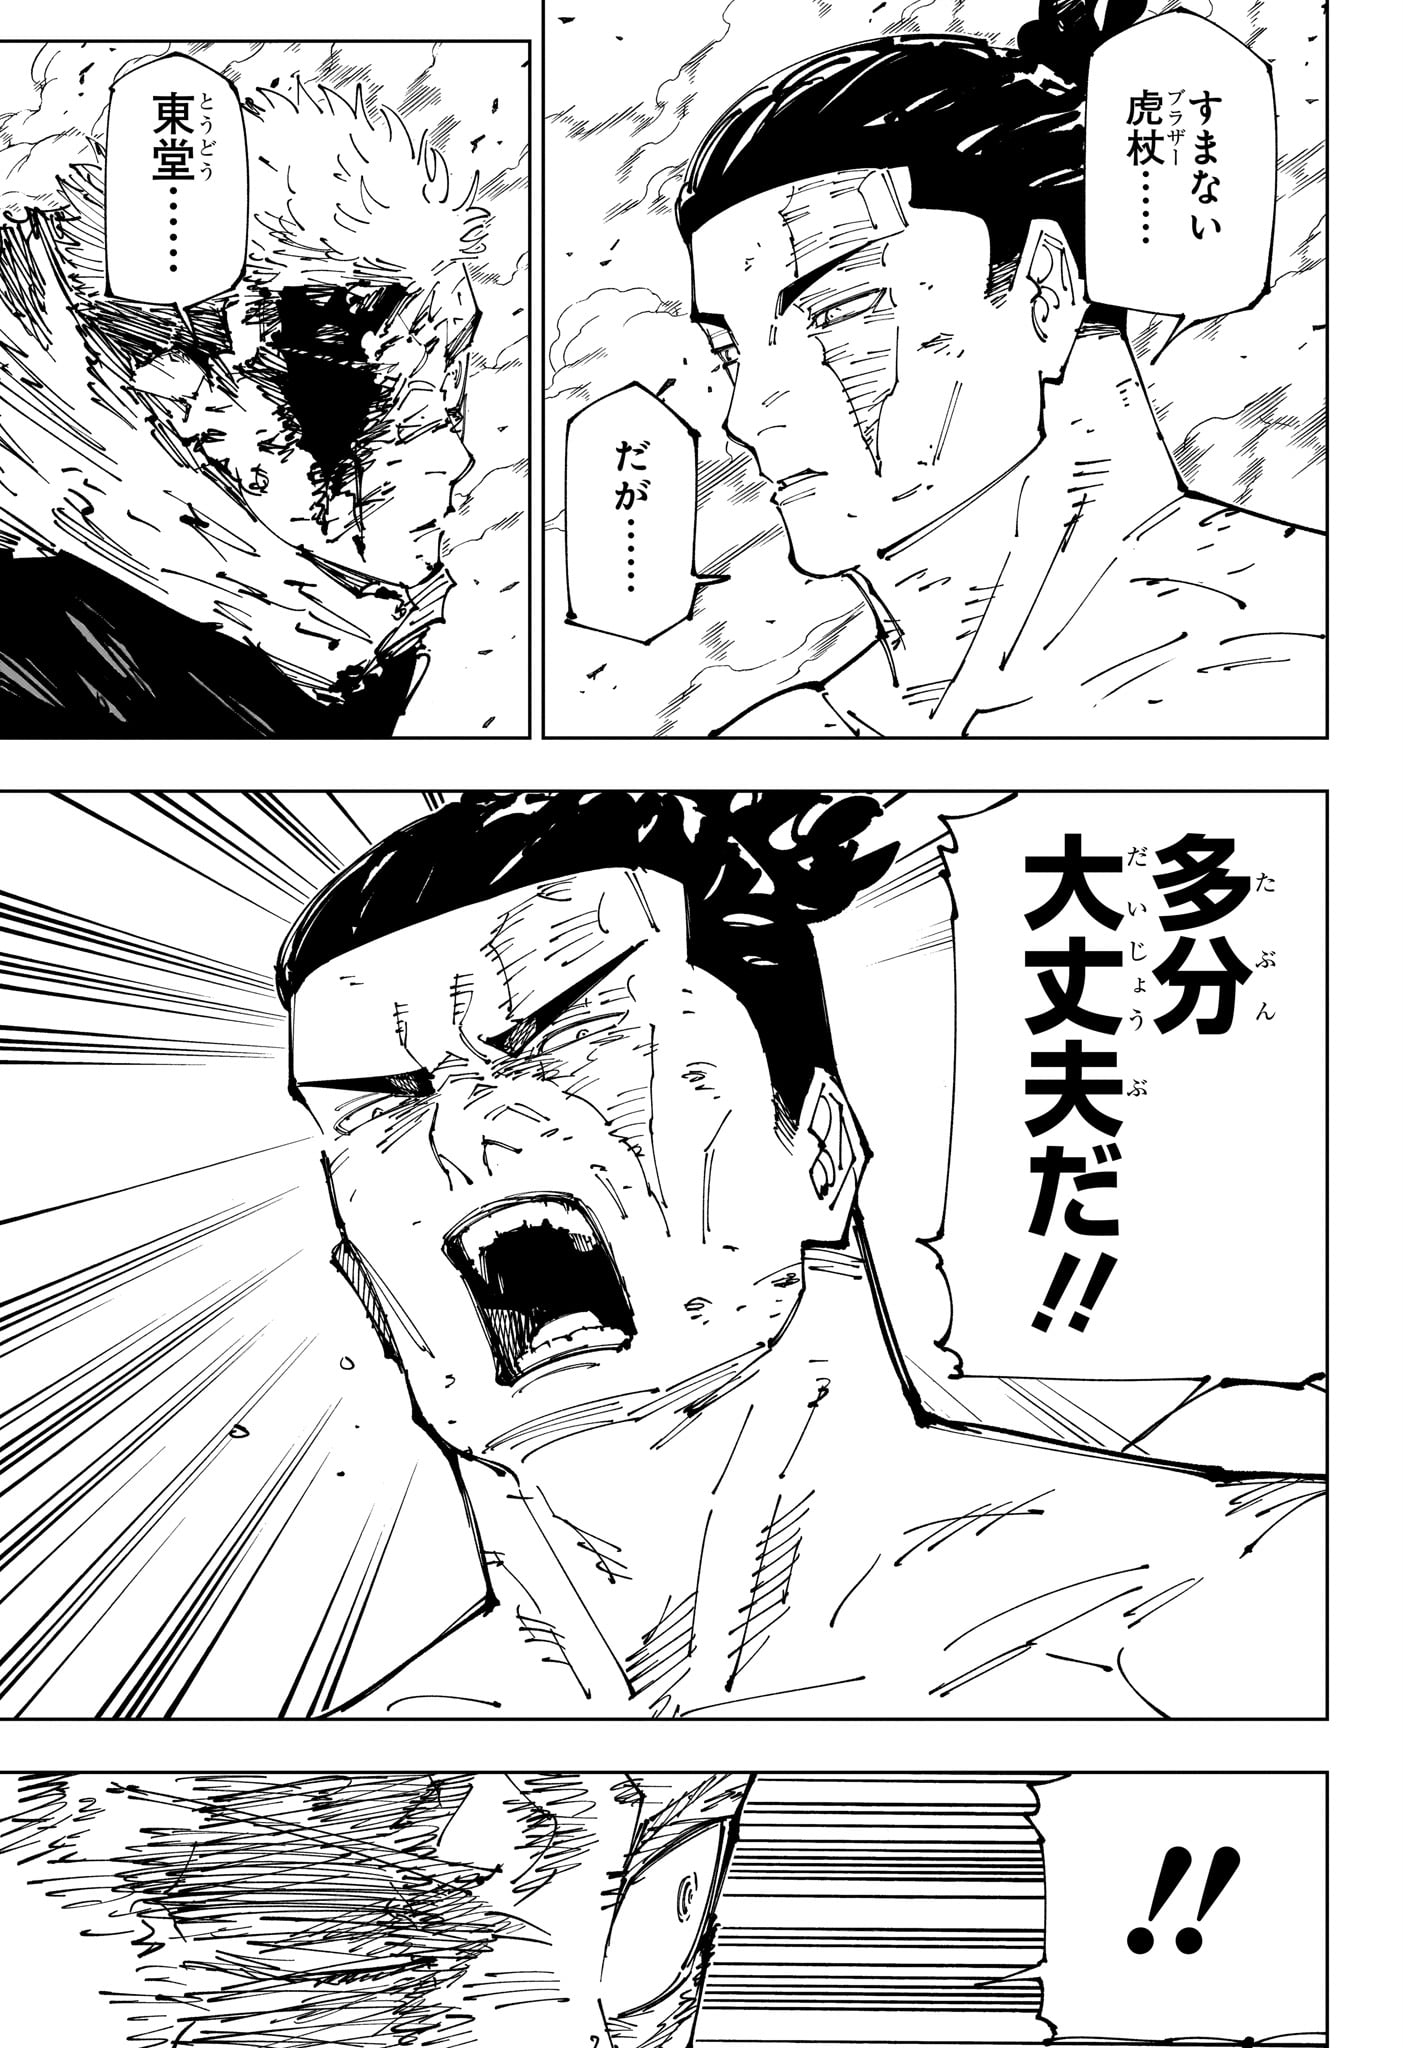 Jujutsu Kaisen - Chapter 259 - Page 17